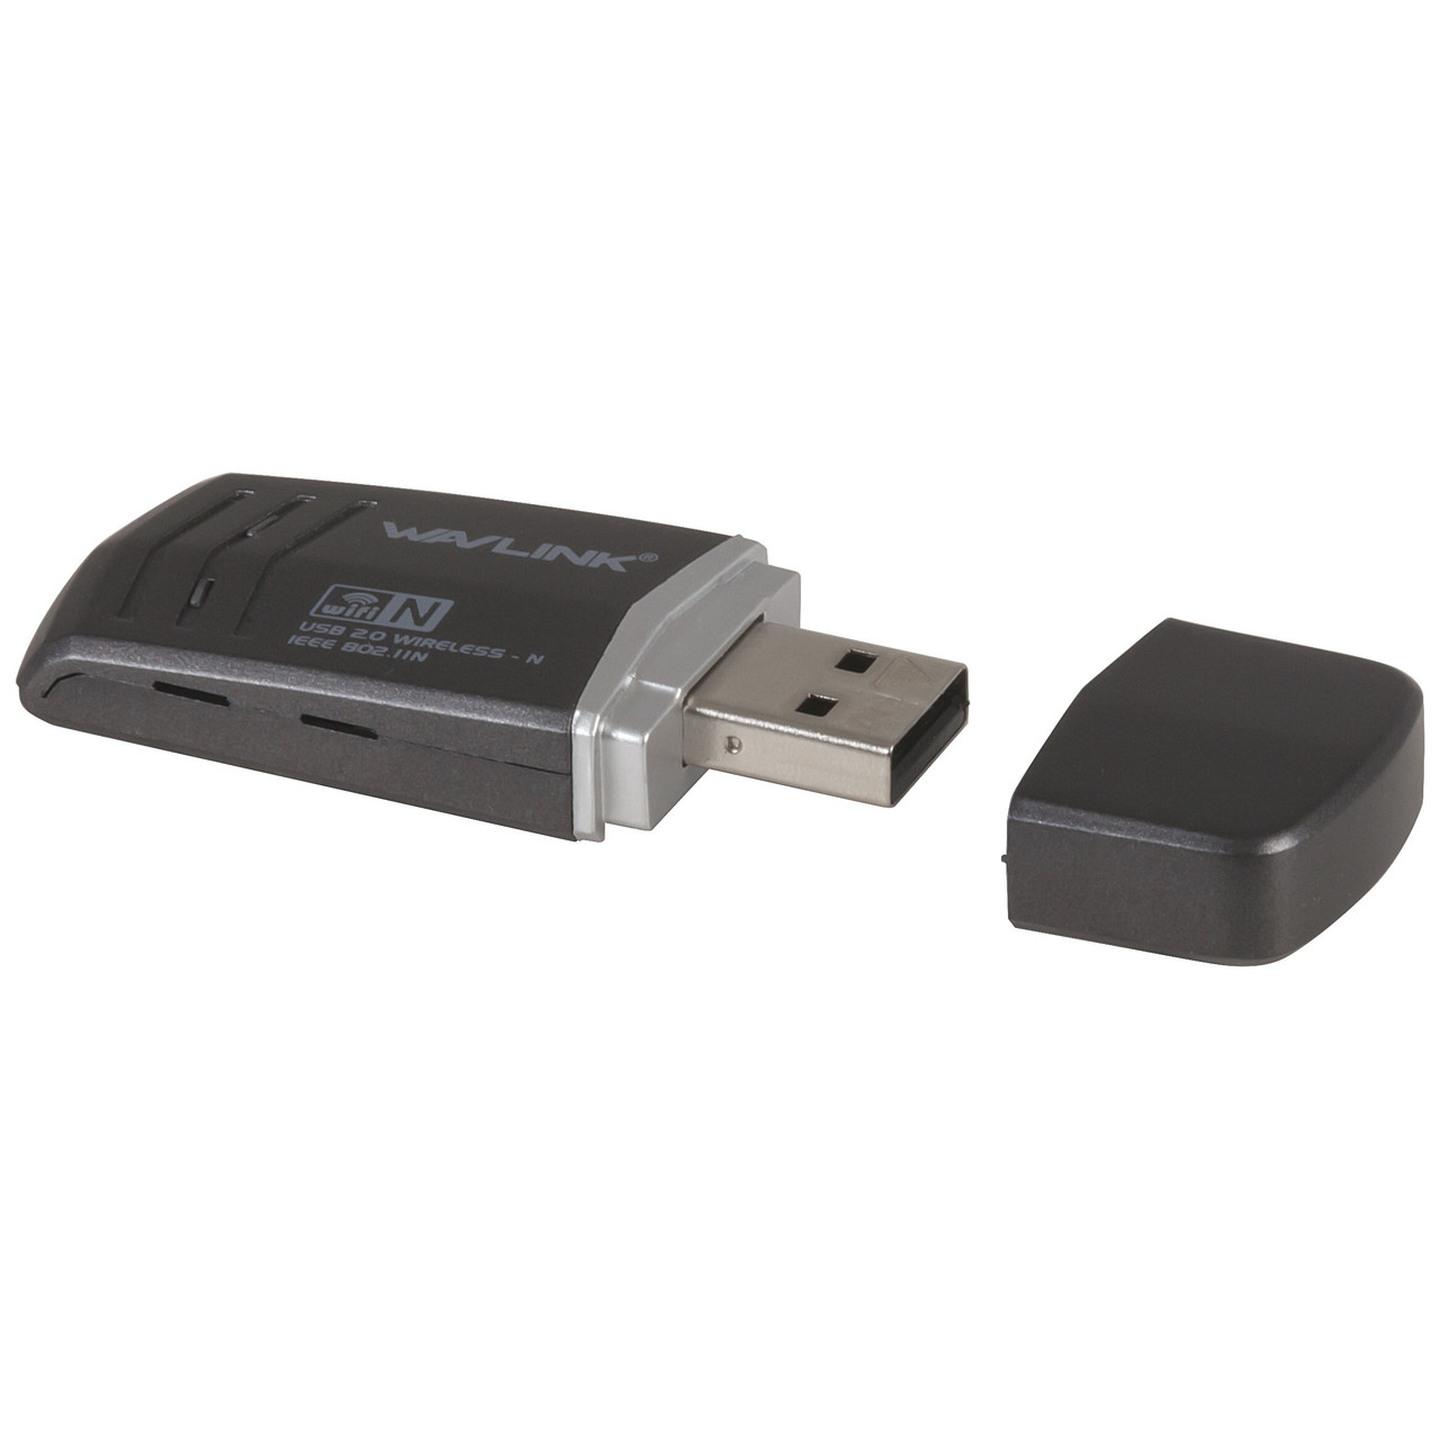 N300 Mini USB 2.0 Wireless Network Adaptor